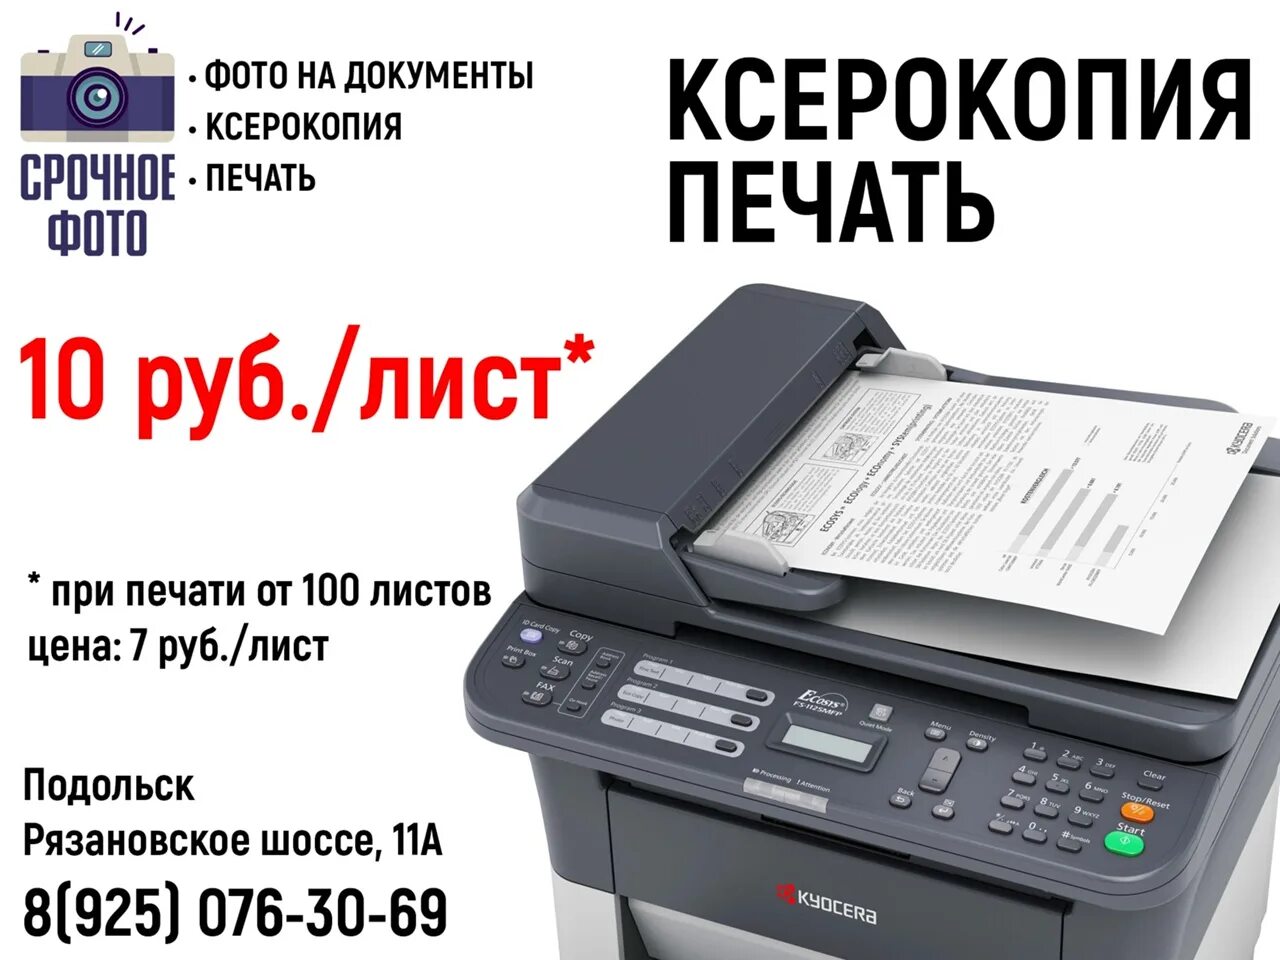 Печать а4 дешево. Ксерокопия печать. Ксерокопия распечатка. Ксерокс распечатка. Ксерокопия распечатка сканирование.